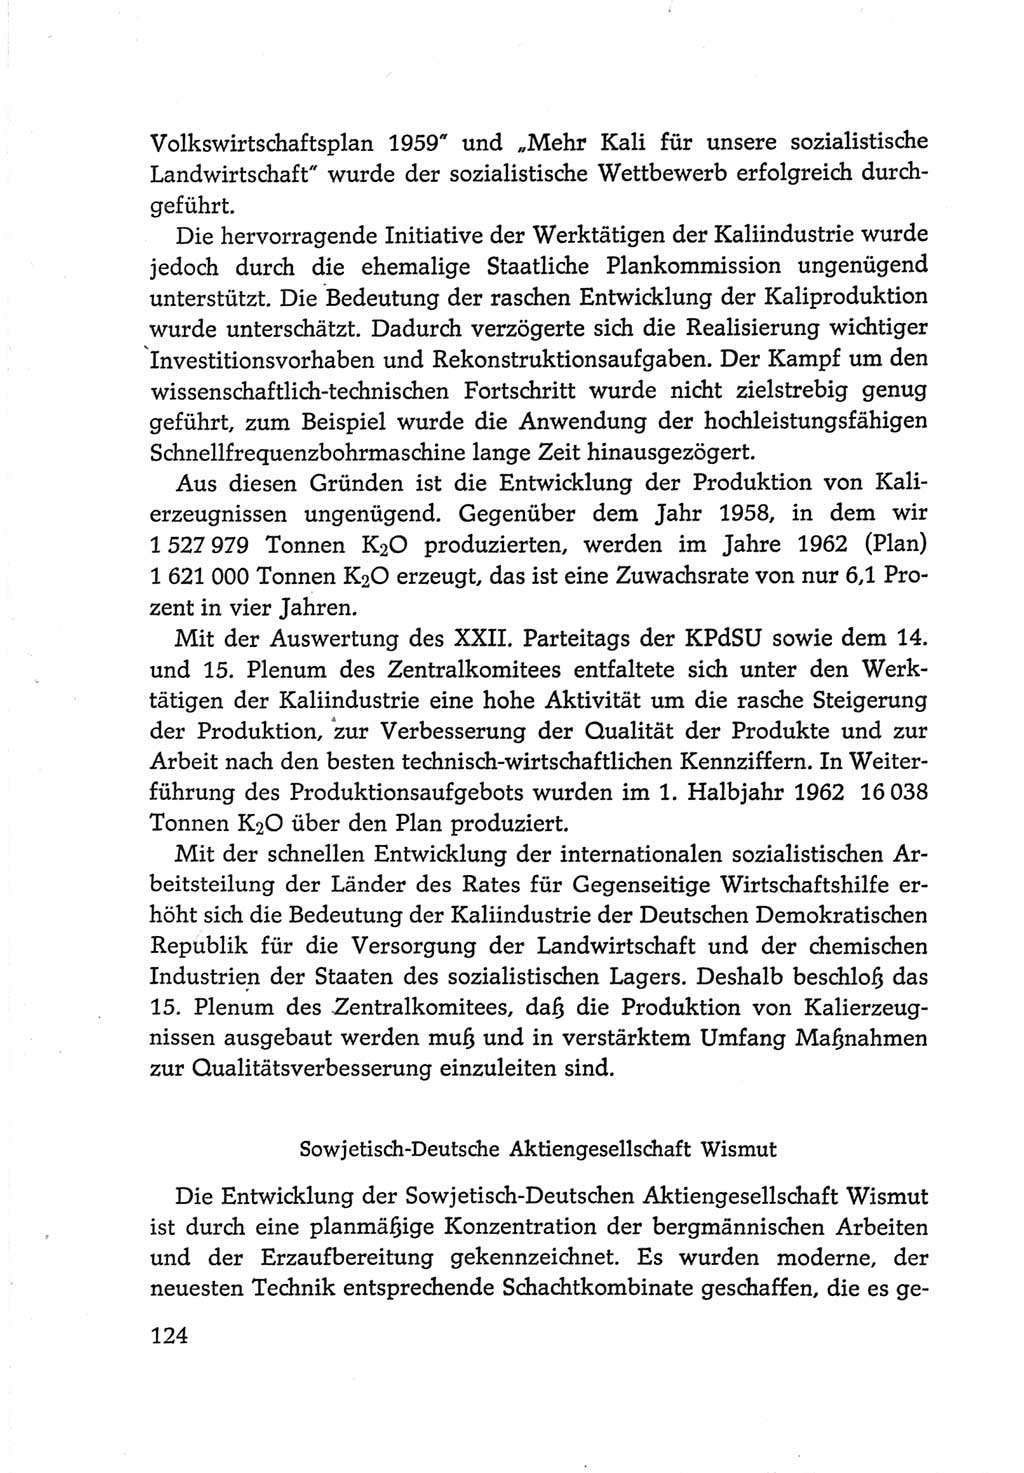 Protokoll der Verhandlungen des Ⅵ. Parteitages der Sozialistischen Einheitspartei Deutschlands (SED) [Deutsche Demokratische Republik (DDR)] 1963, Band Ⅳ, Seite 124 (Prot. Verh. Ⅵ. PT SED DDR 1963, Bd. Ⅳ, S. 124)